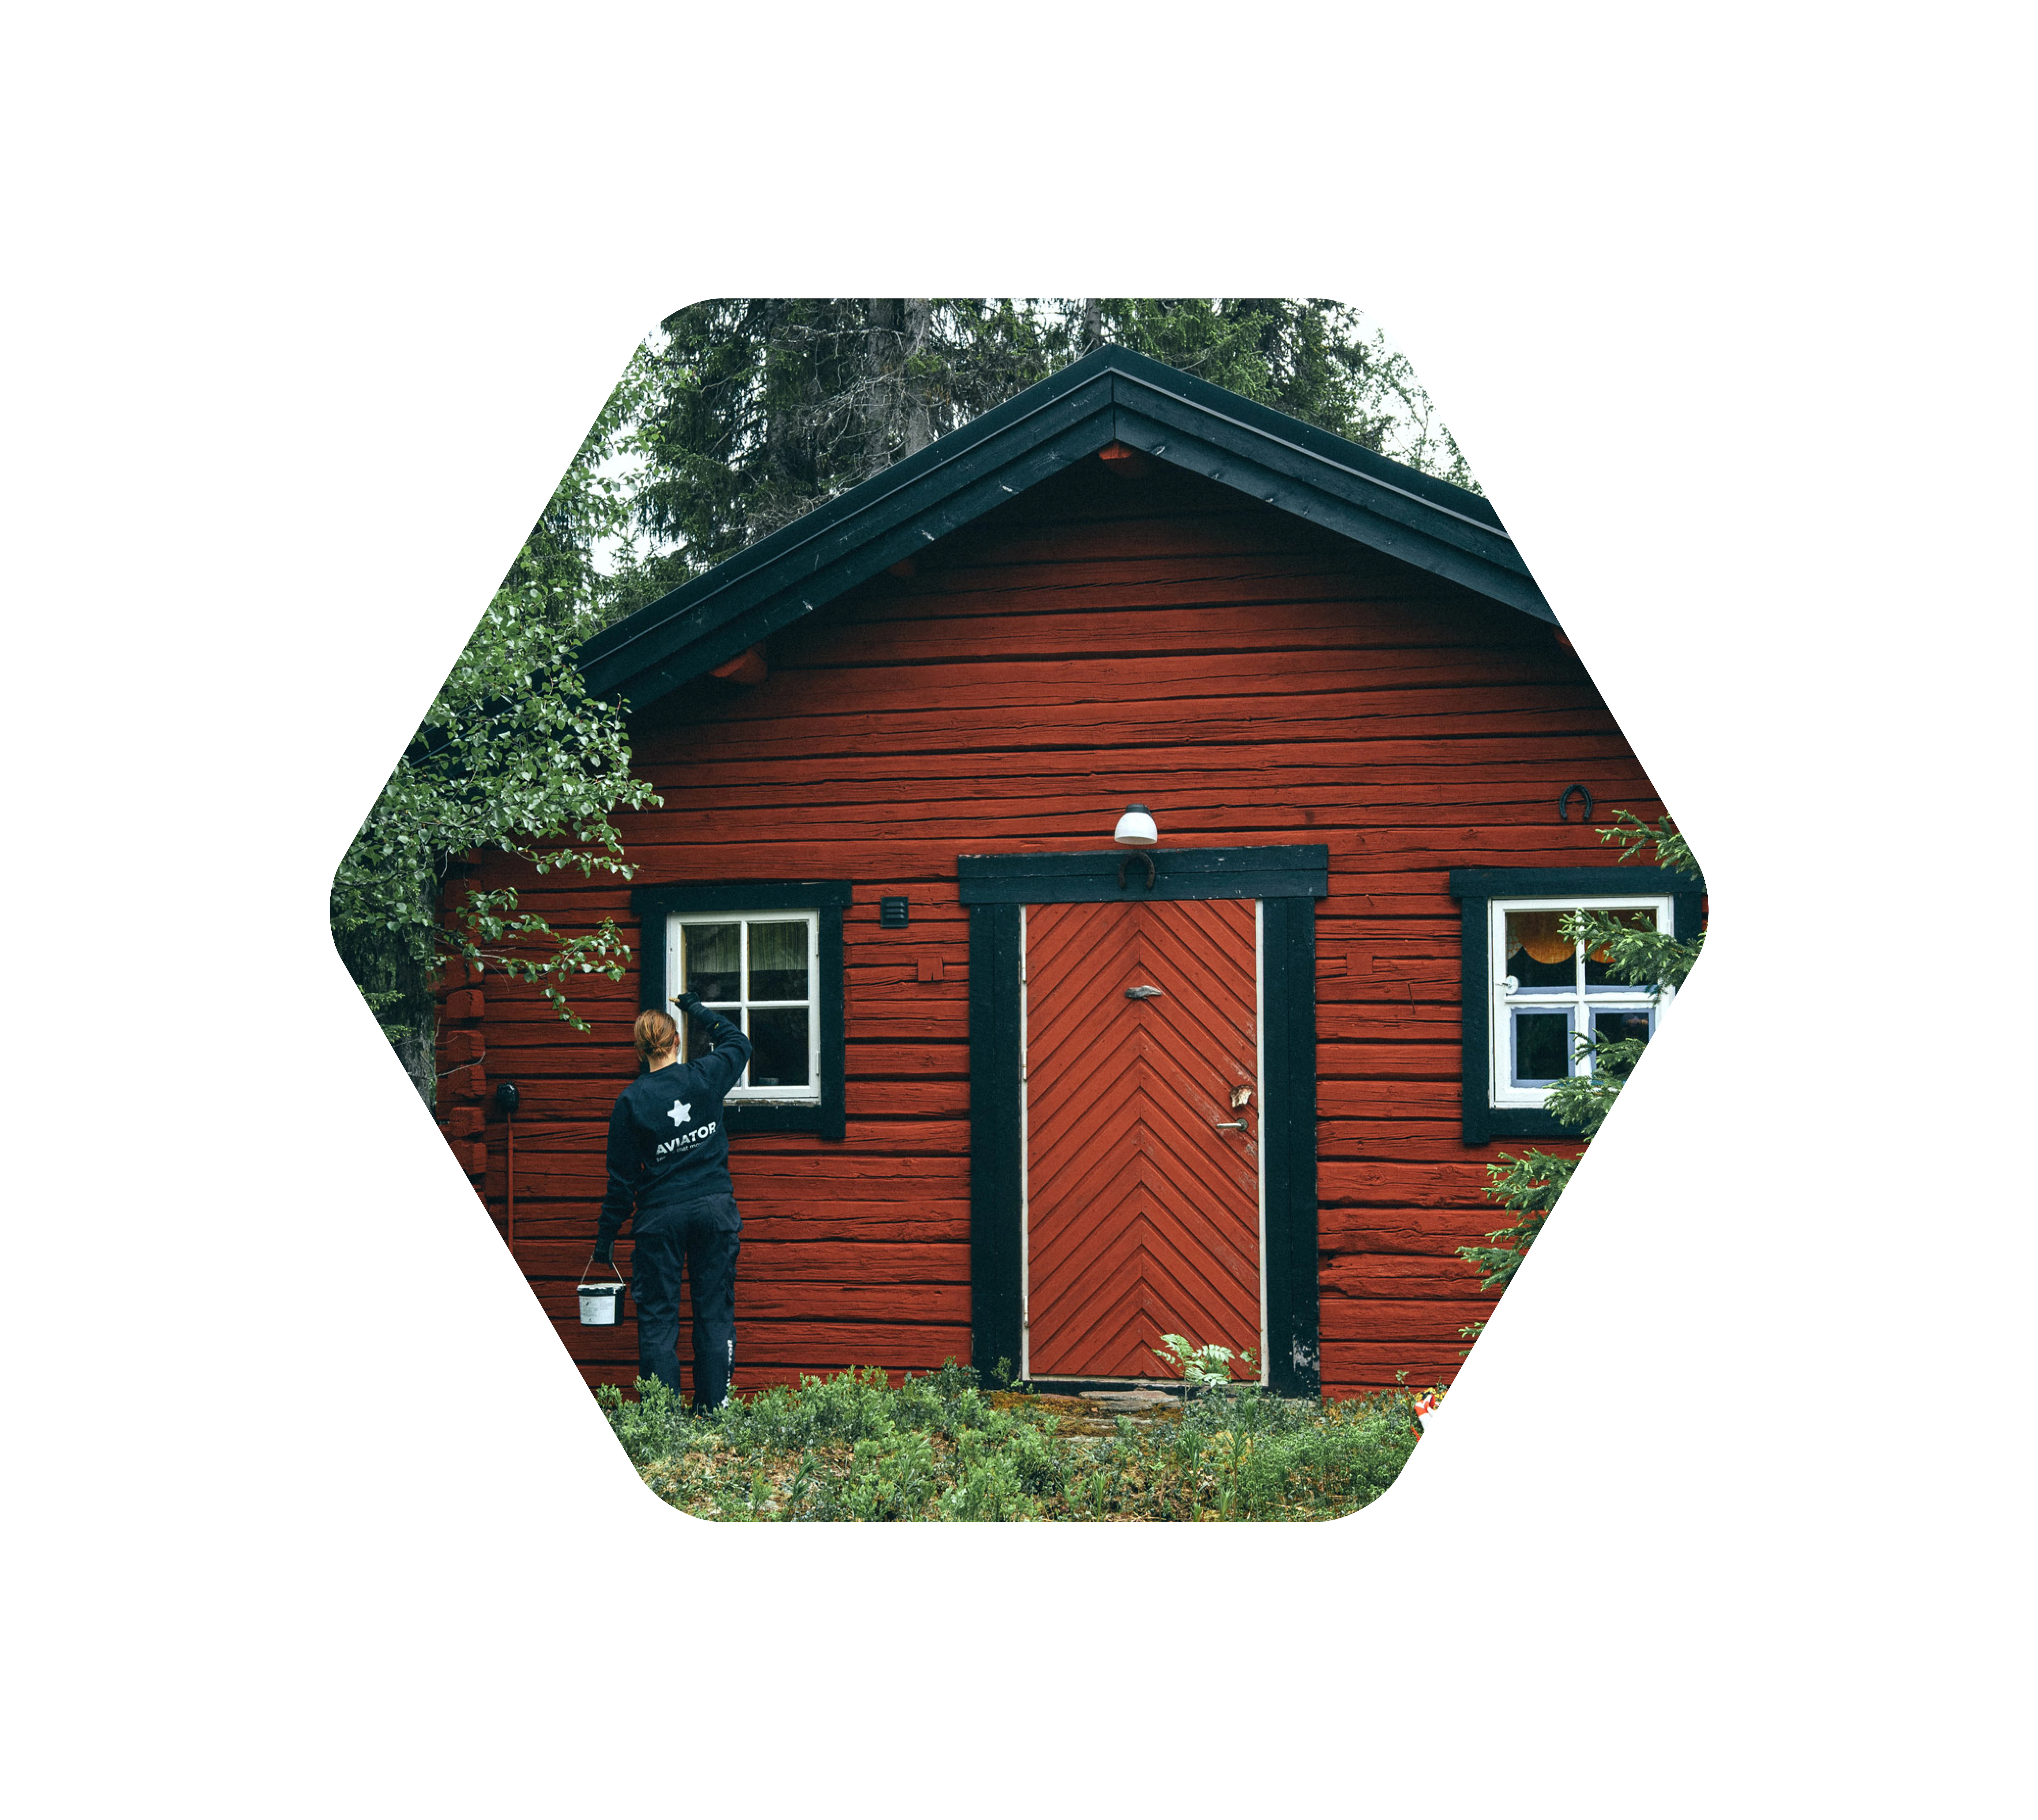 En bild på en röd stuga i skogen där en kvinna står och målar fönsterkarmen svart.